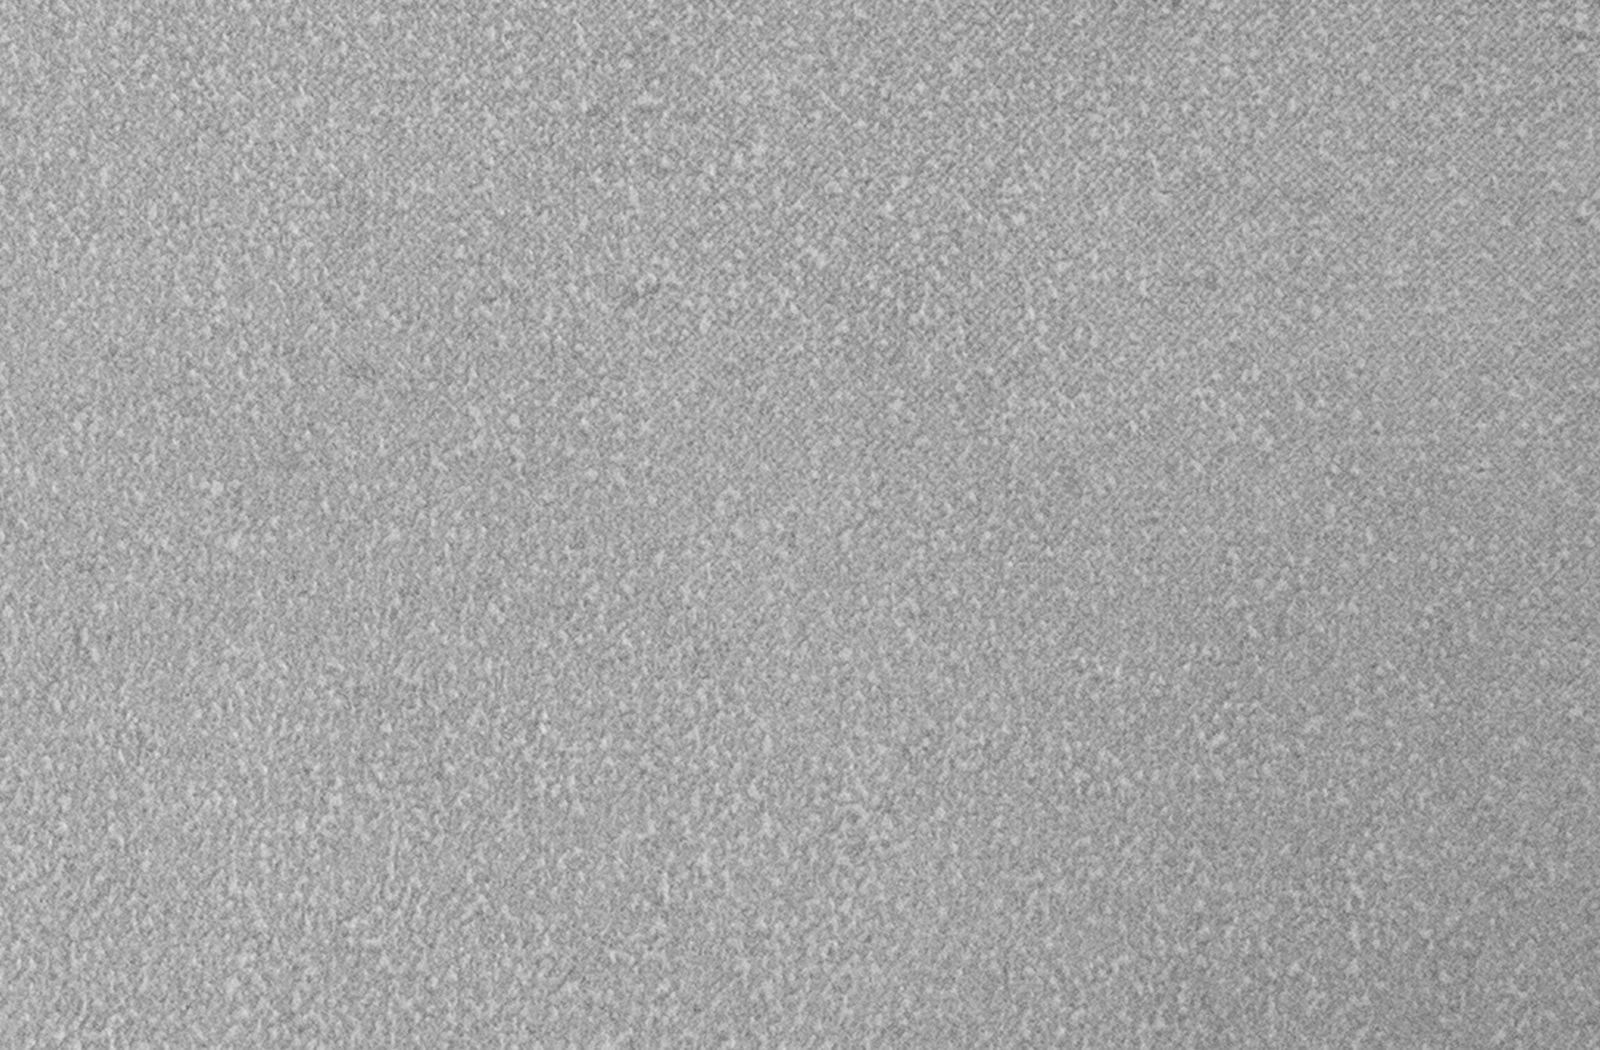 Cane-line Pure | Esstisch 100x100 cm | Light grey - Concrete grey